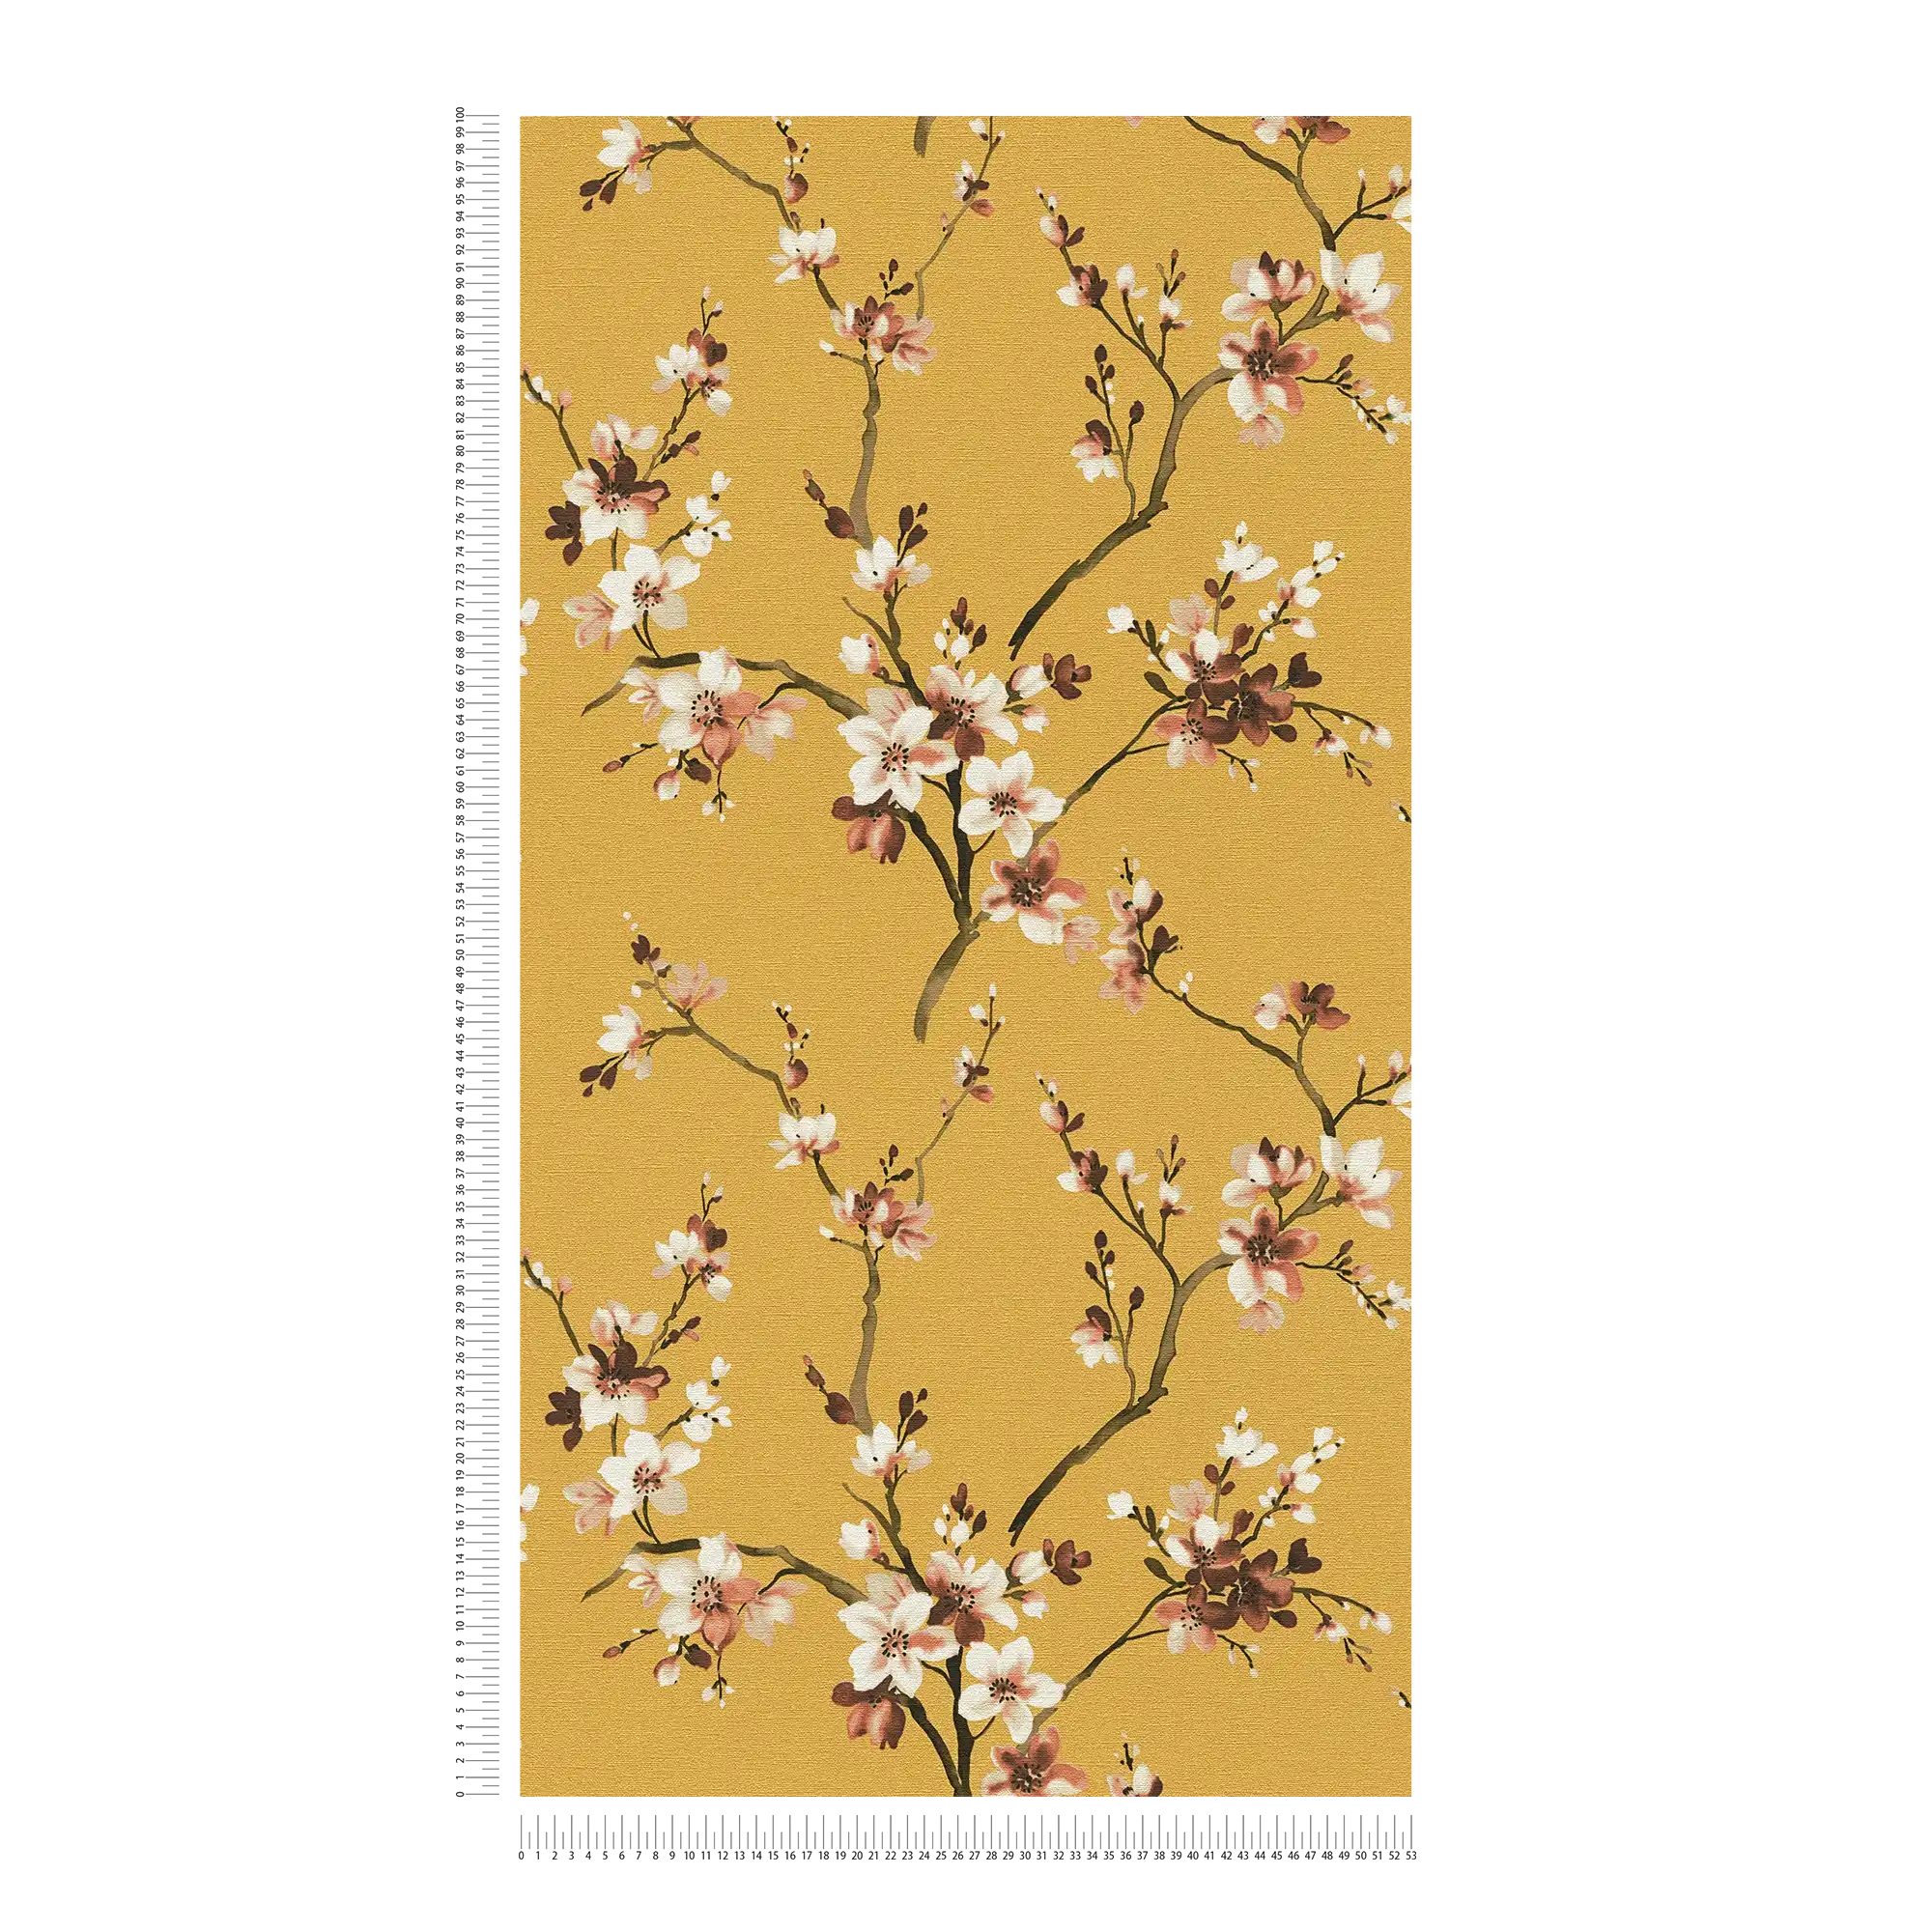             Papel Pintado Floral Amarillo Mostaza con Ramas en Flor
        